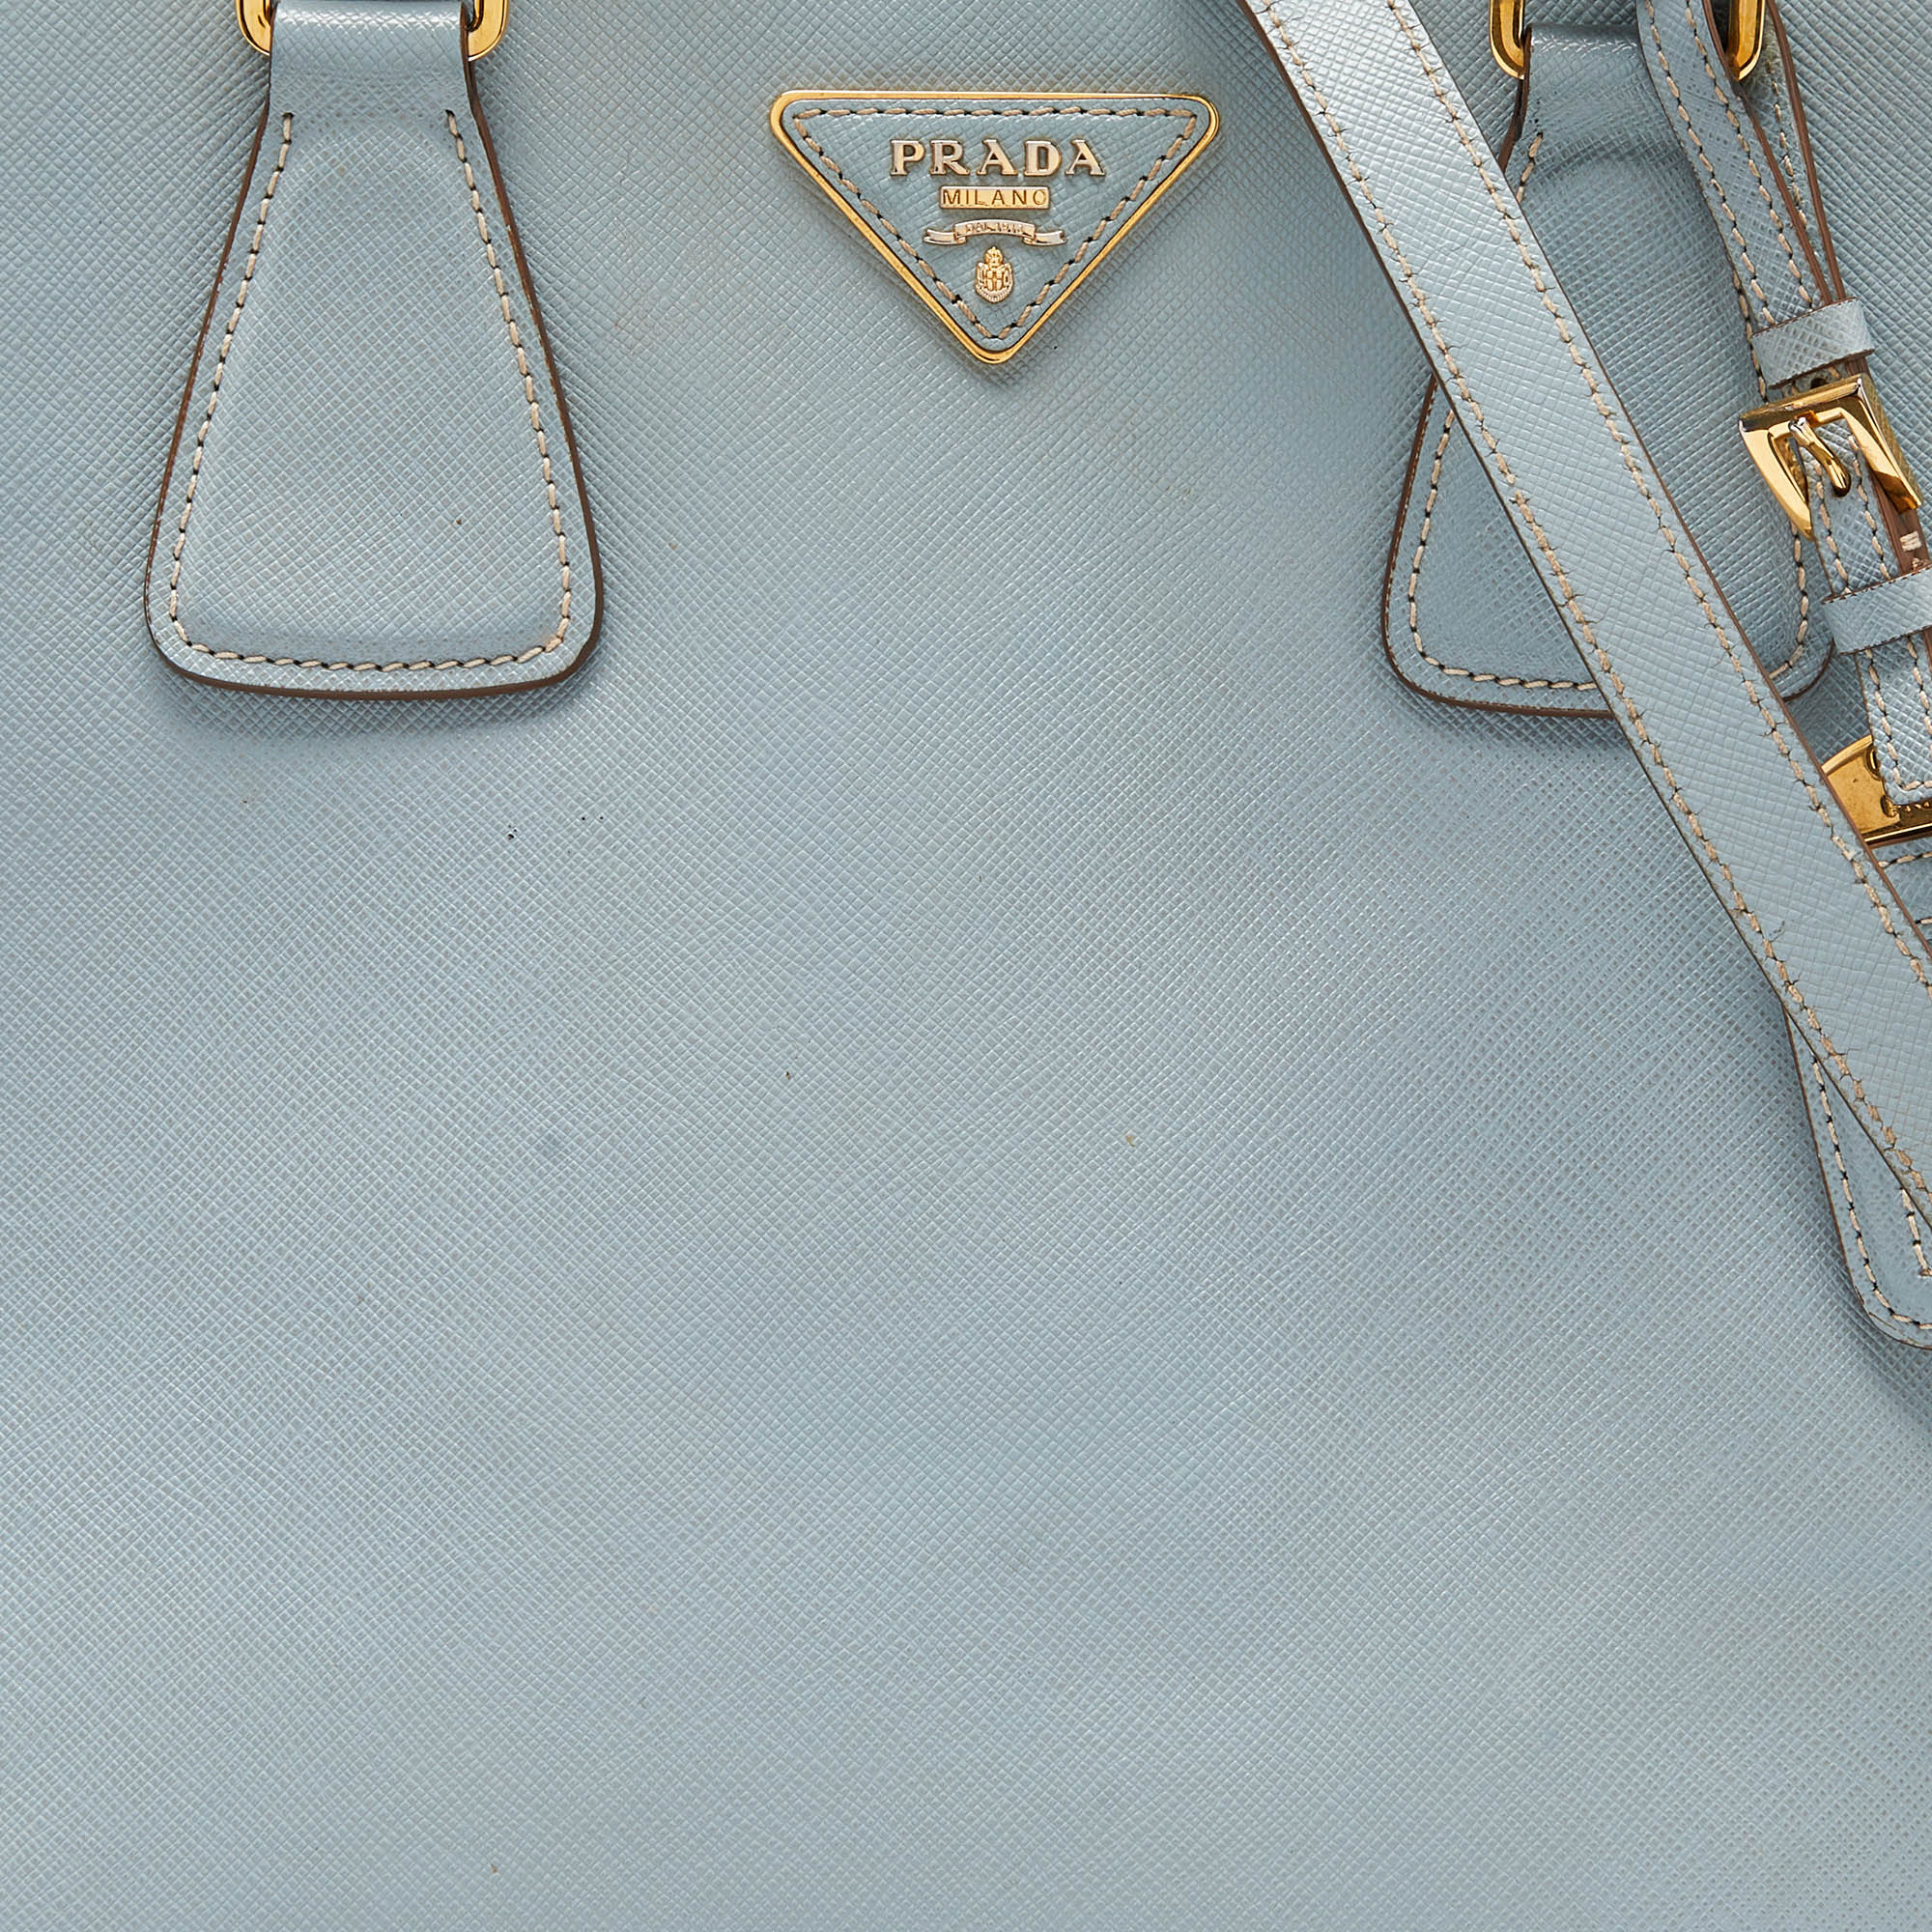 Prada Blue/White Saffiano Lux Leather Open Tote